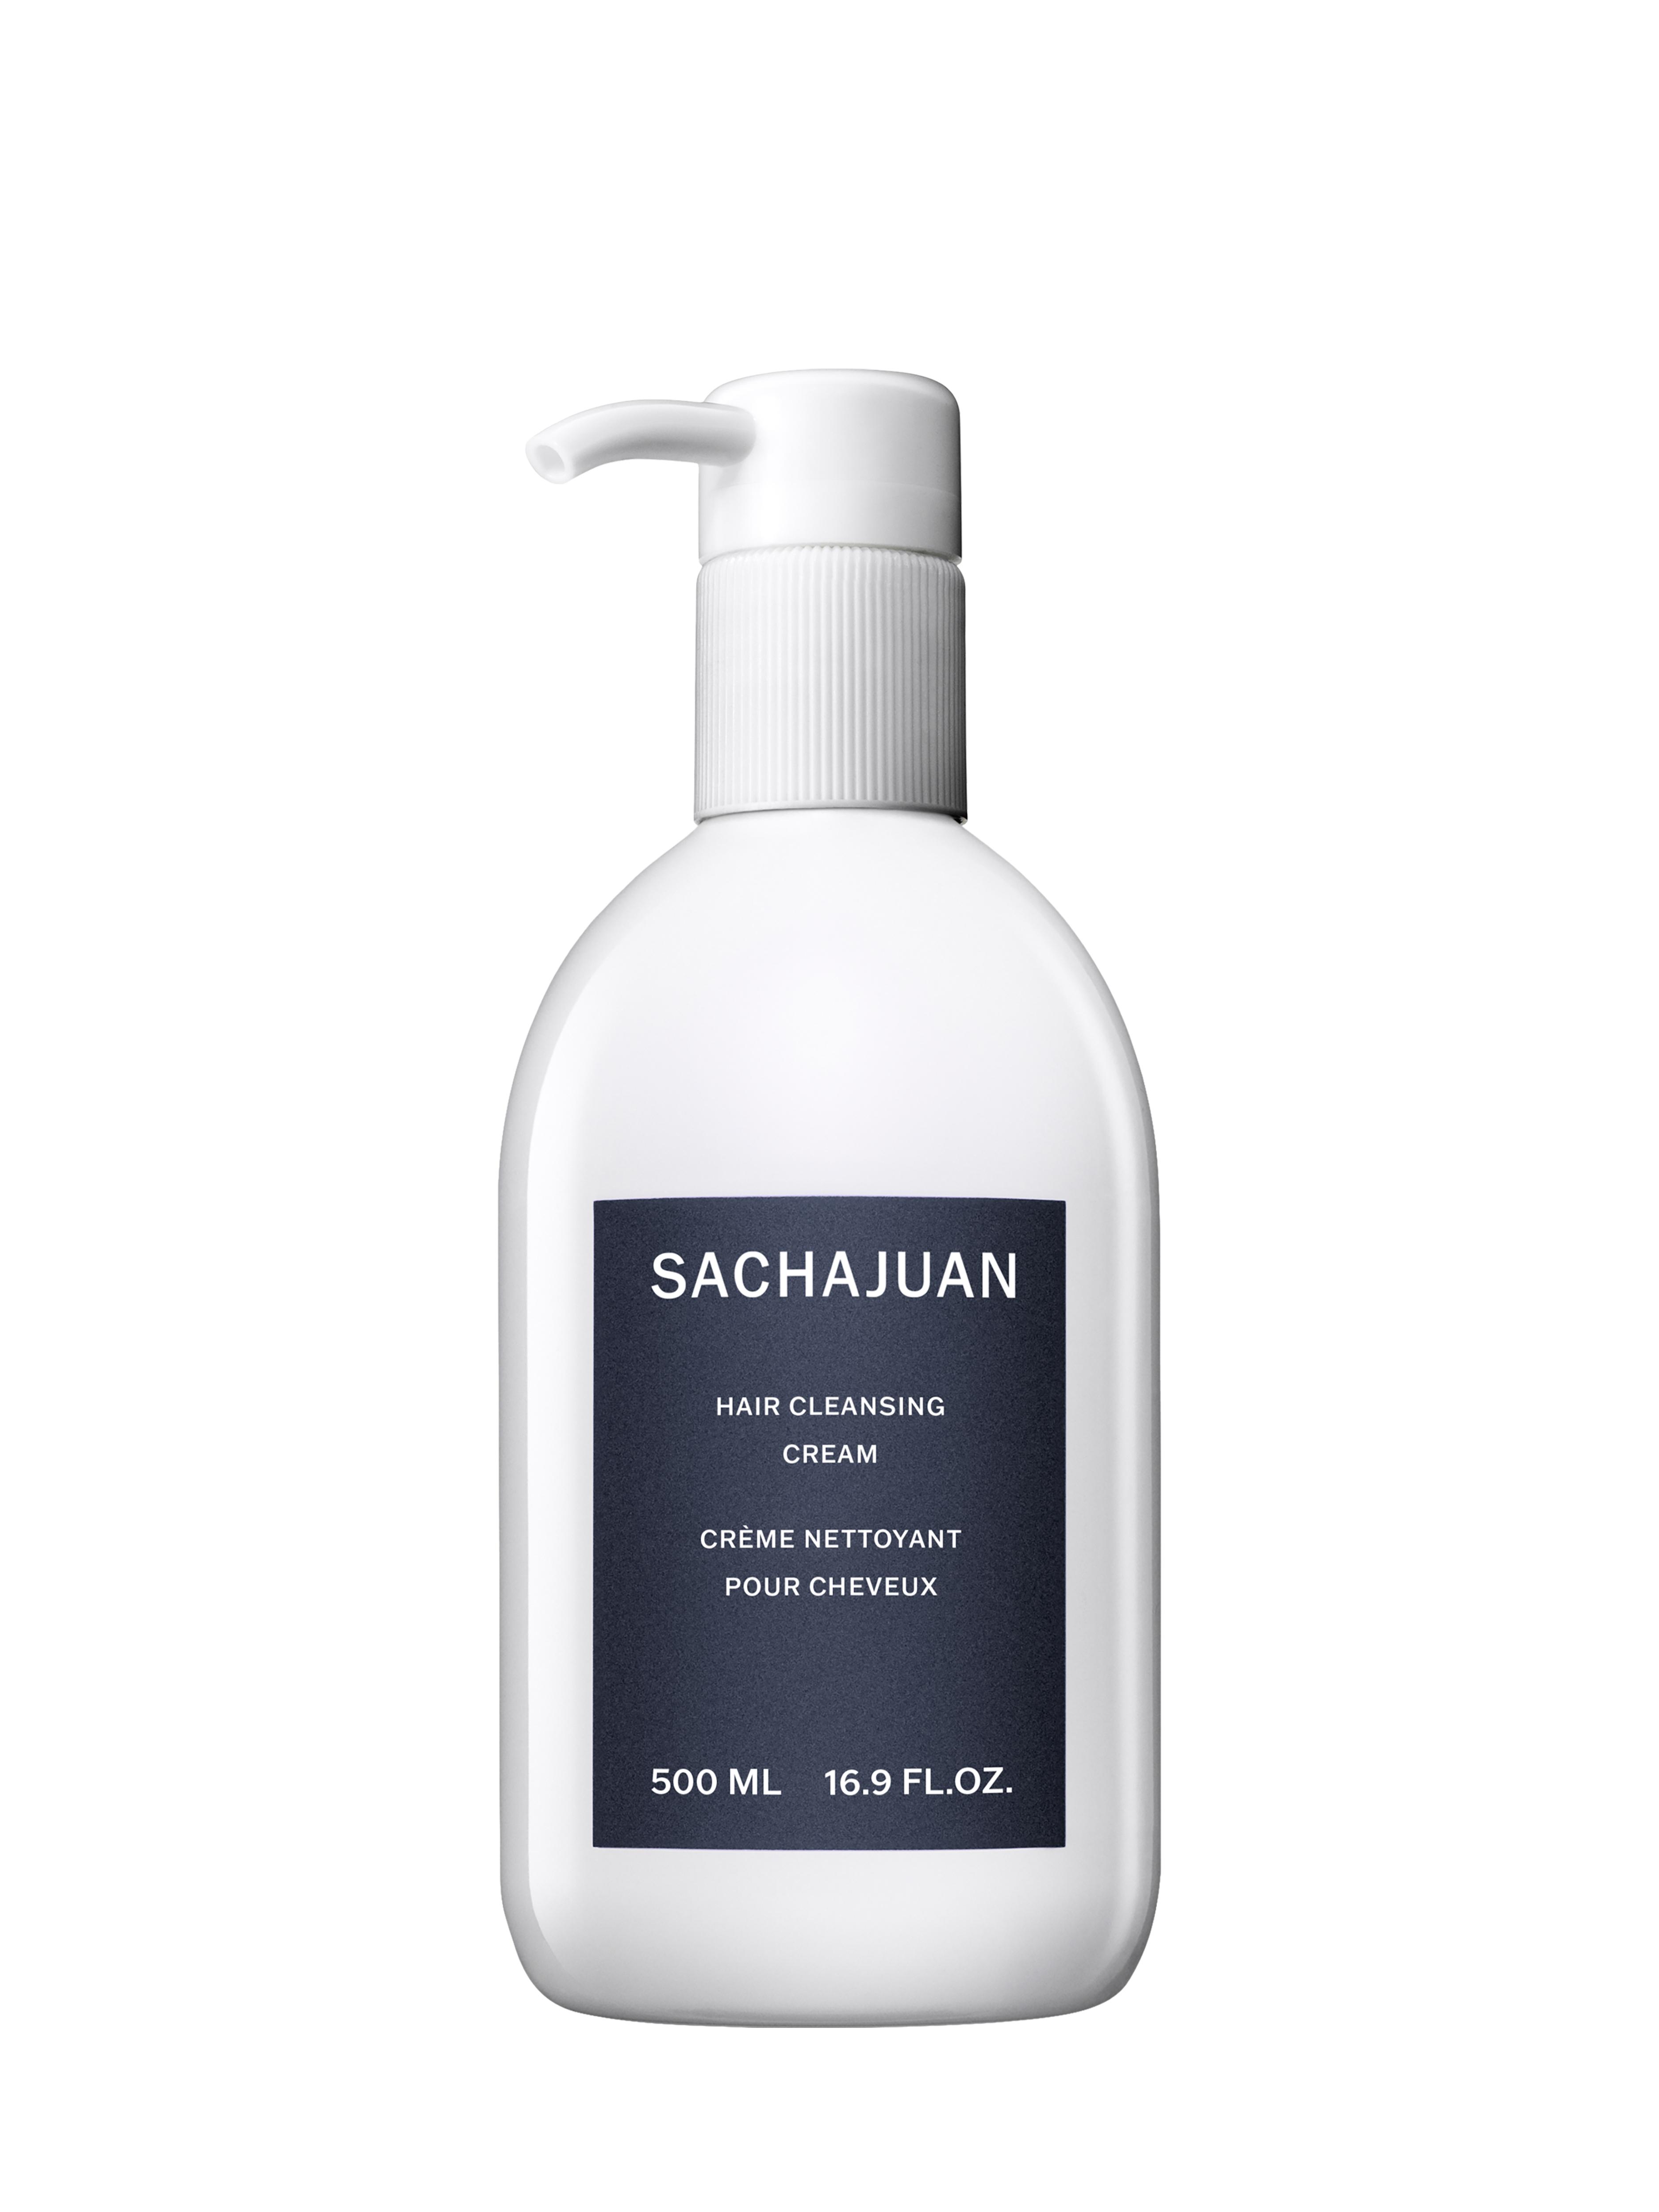 SACHAJUAN - Hair Cleansing Cream